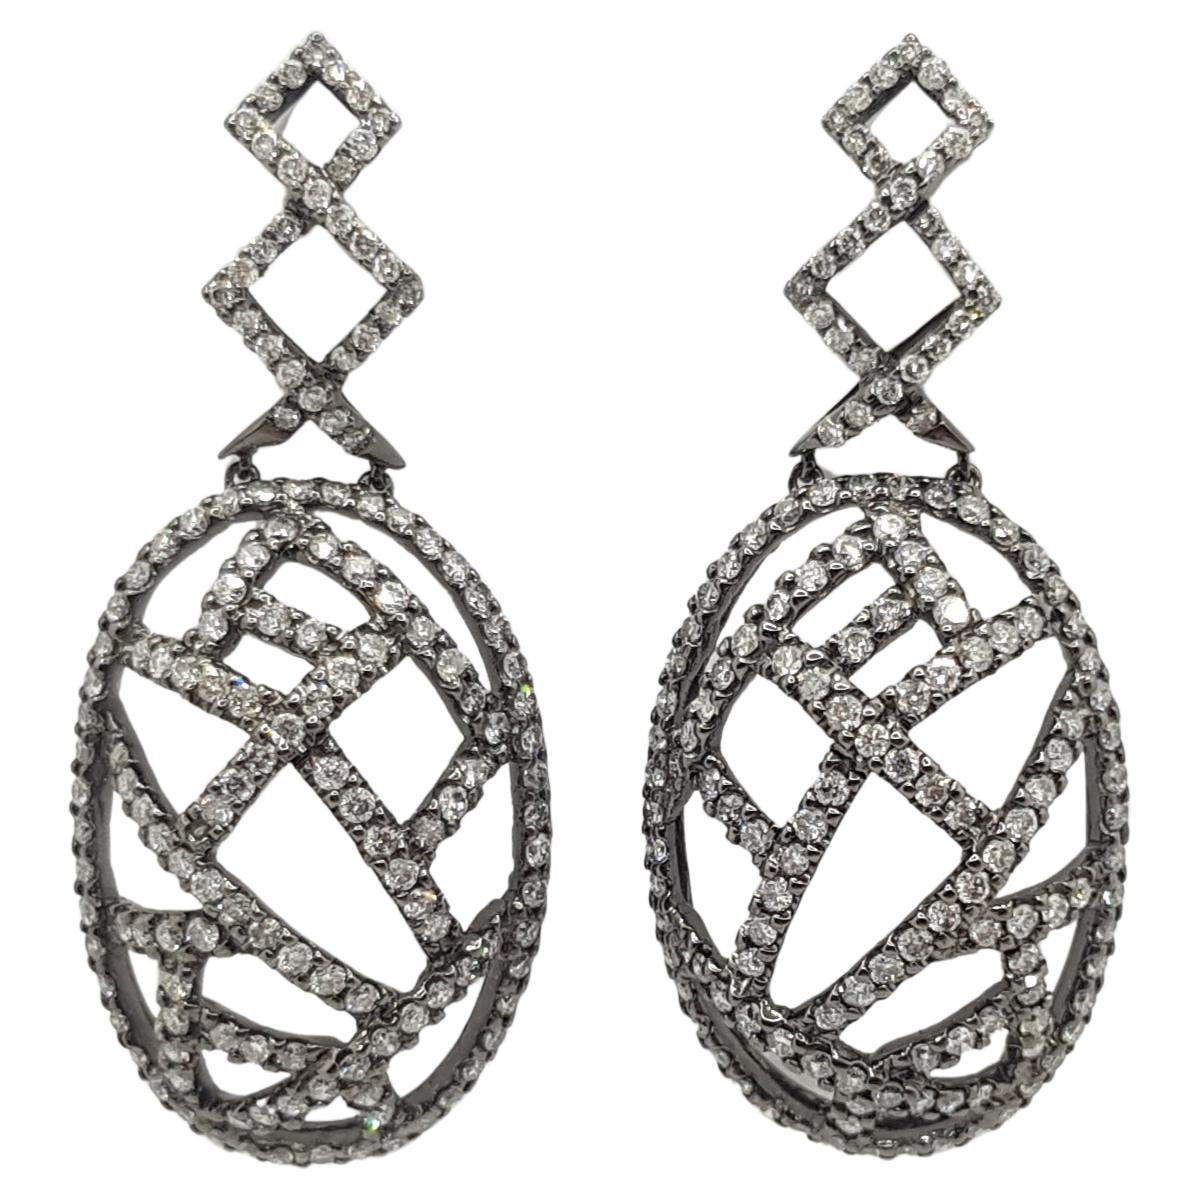 Gray Diamond Earrings Set in 18 Karat White Gold Settings